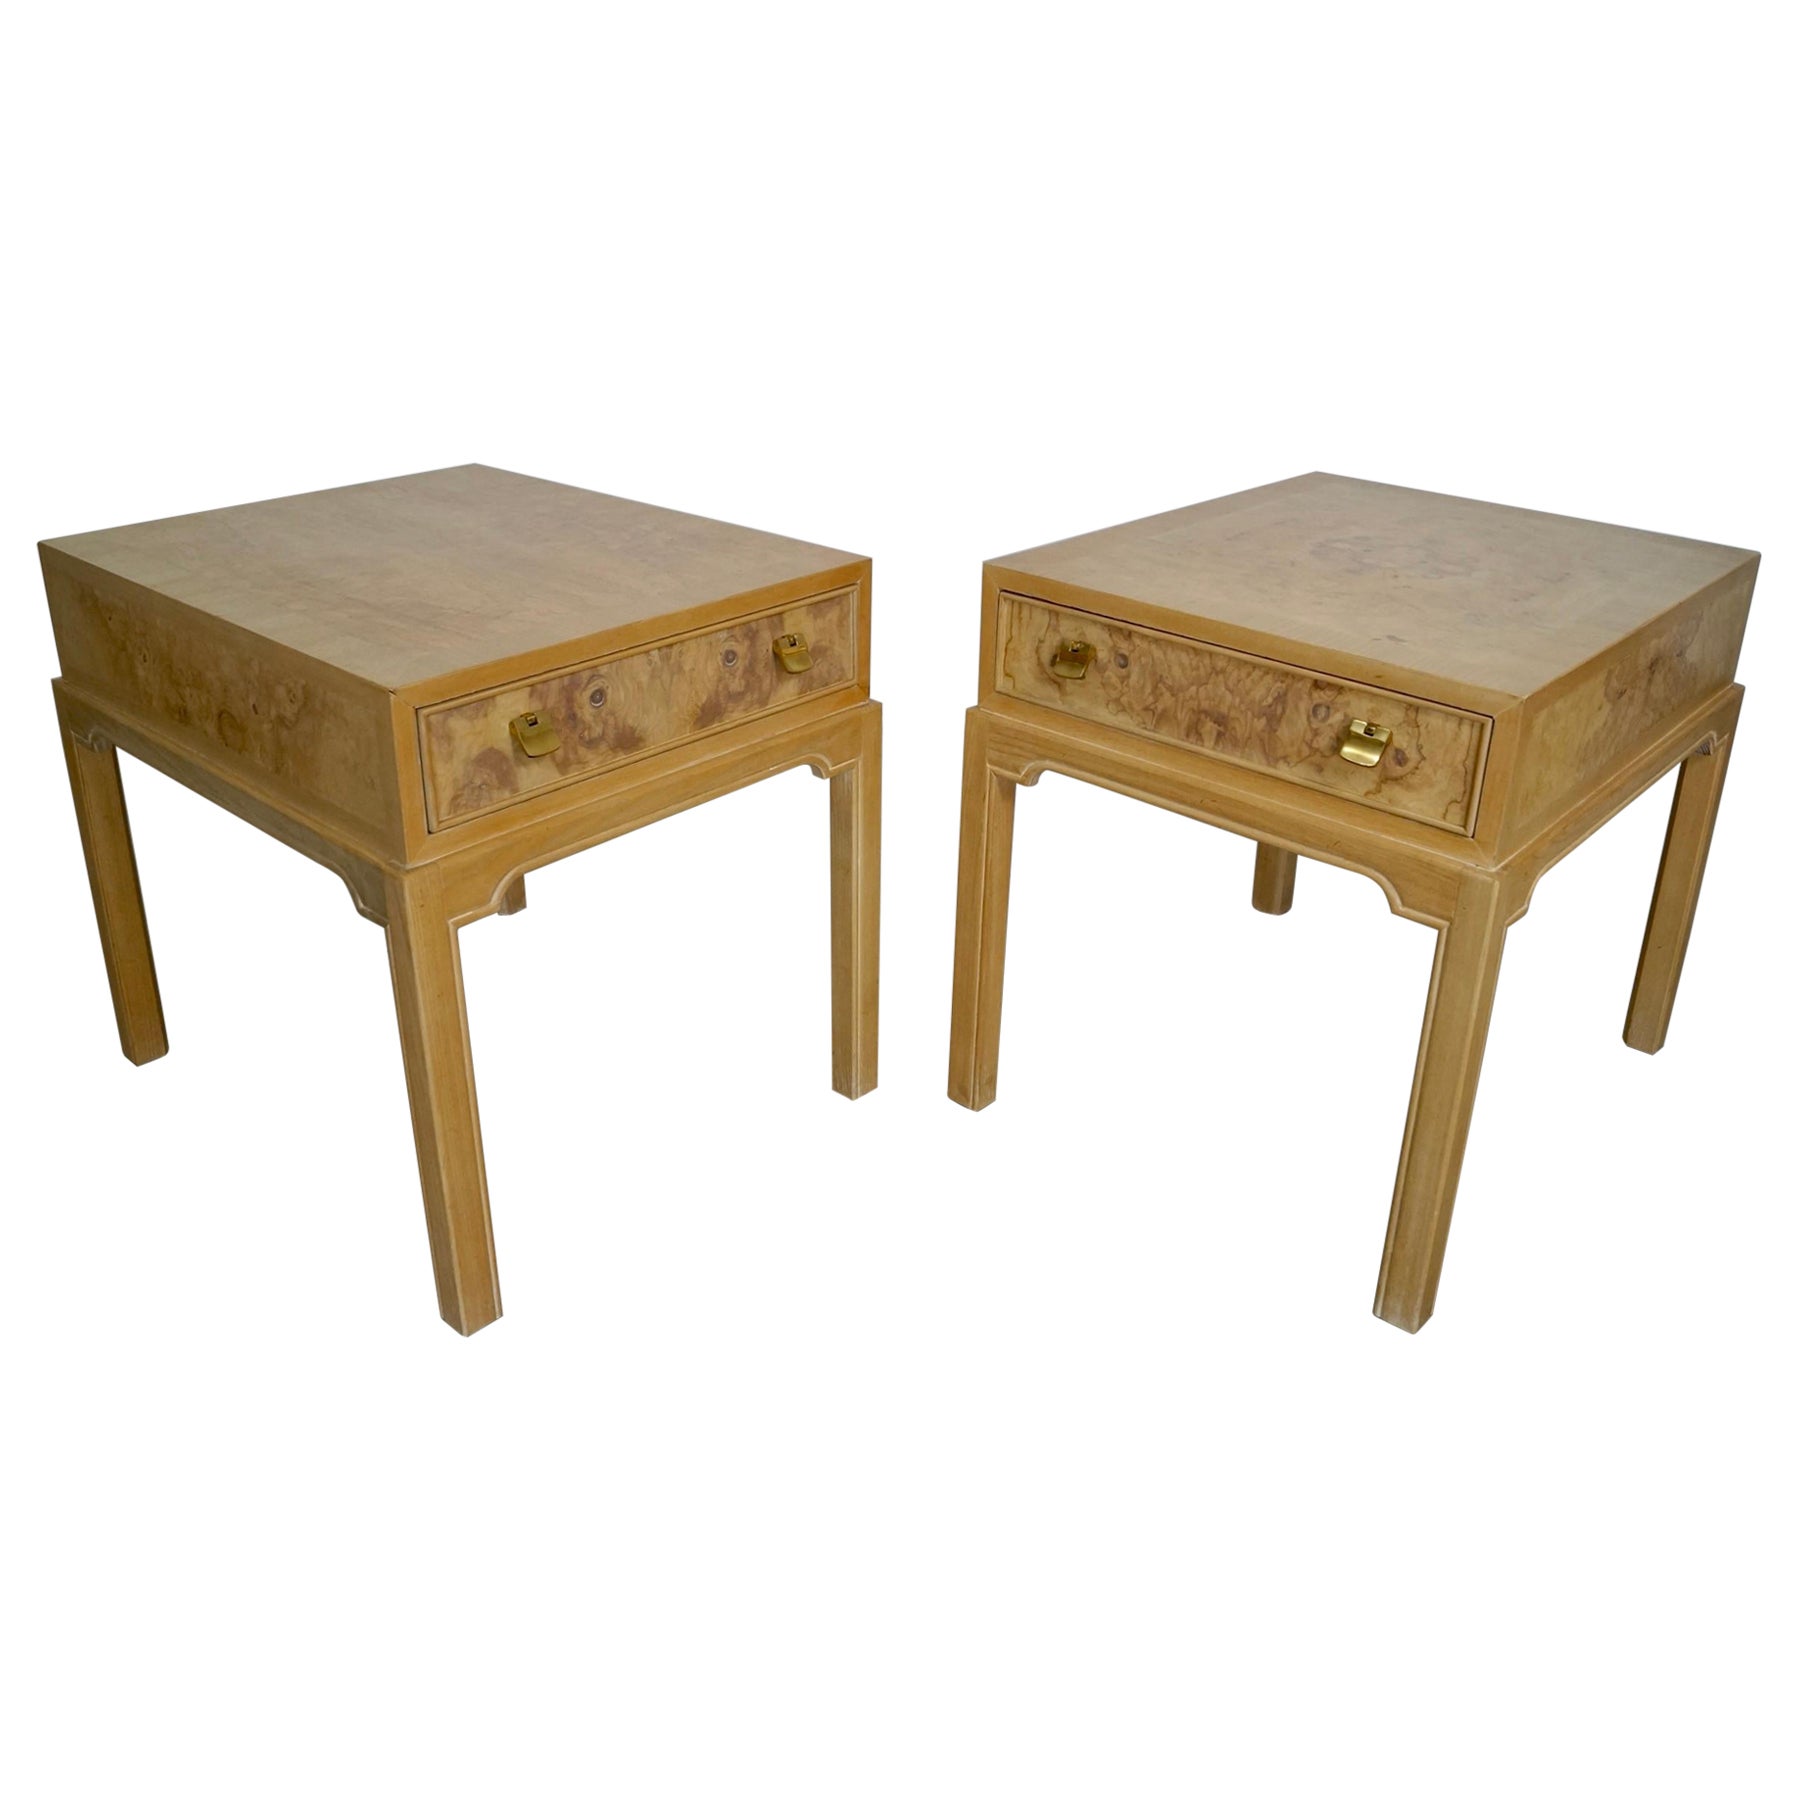 Vintage Burl Wood Drexel End Tables - A Pair For Sale